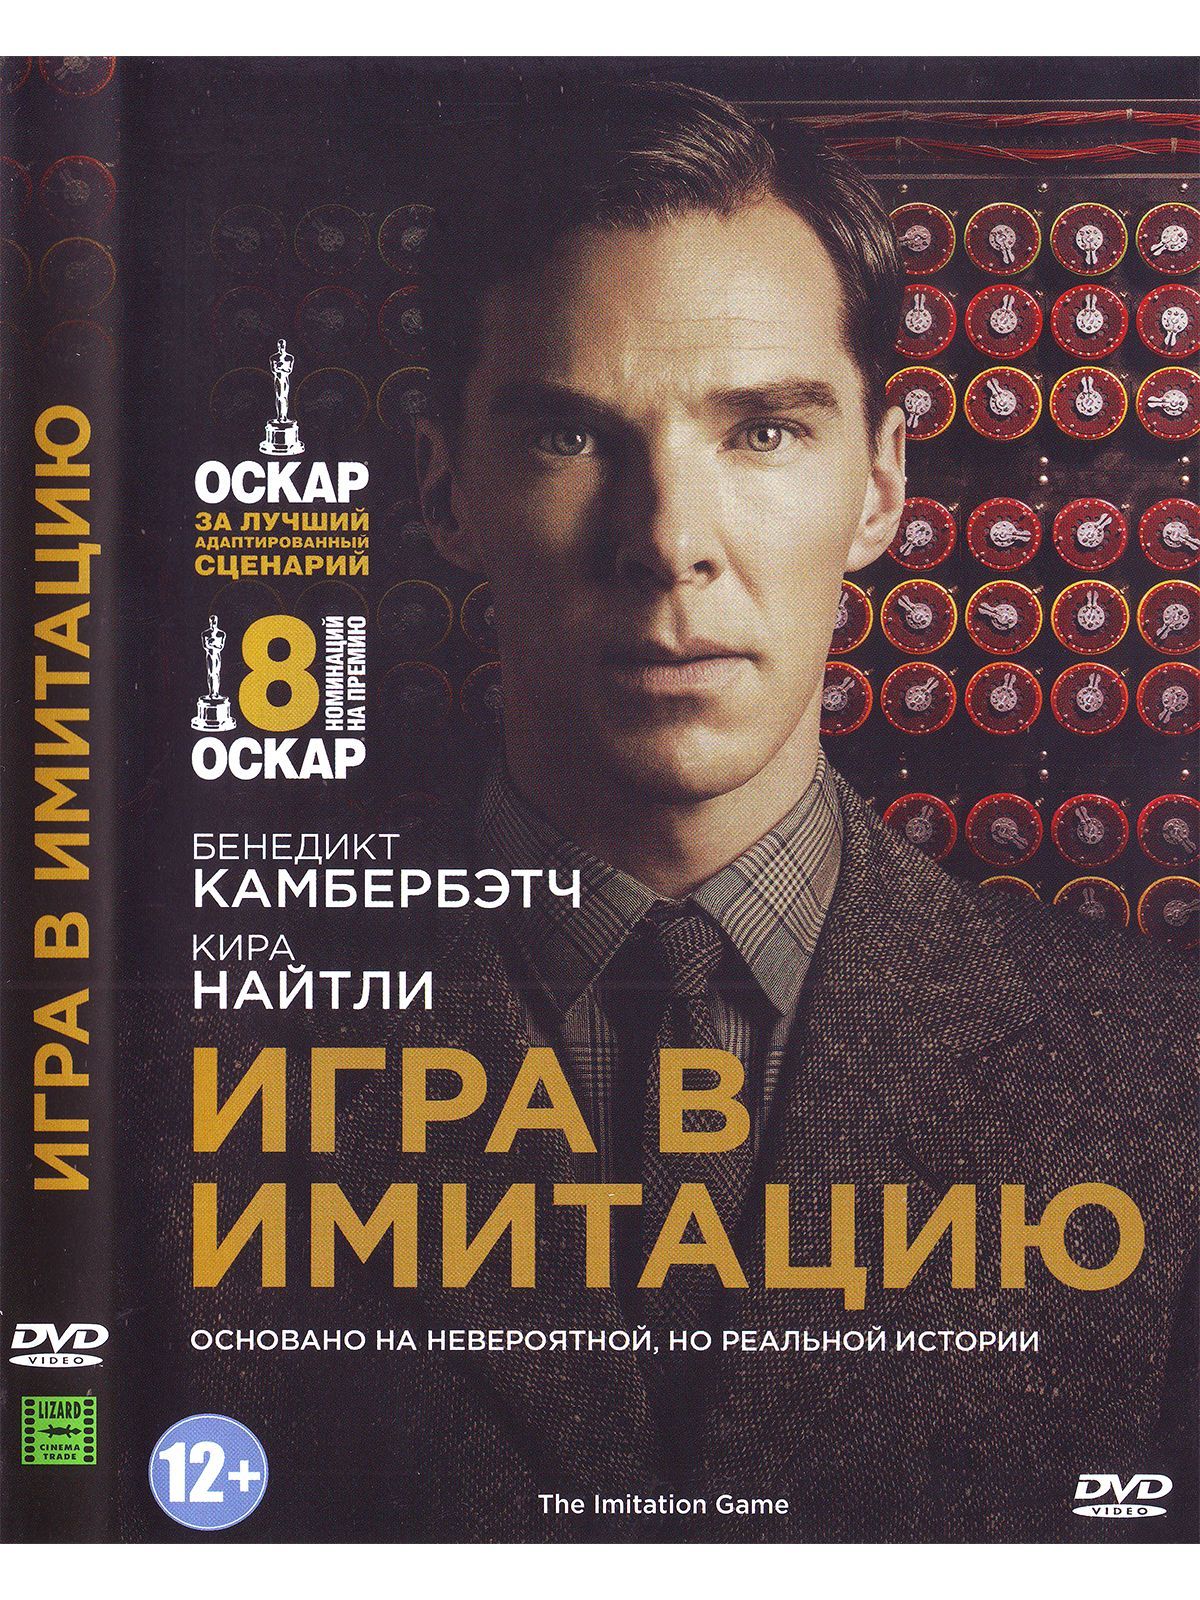 Фильм Игра в имитацию () смотреть онлайн бесплатно на русском языке в хорошем HD качестве